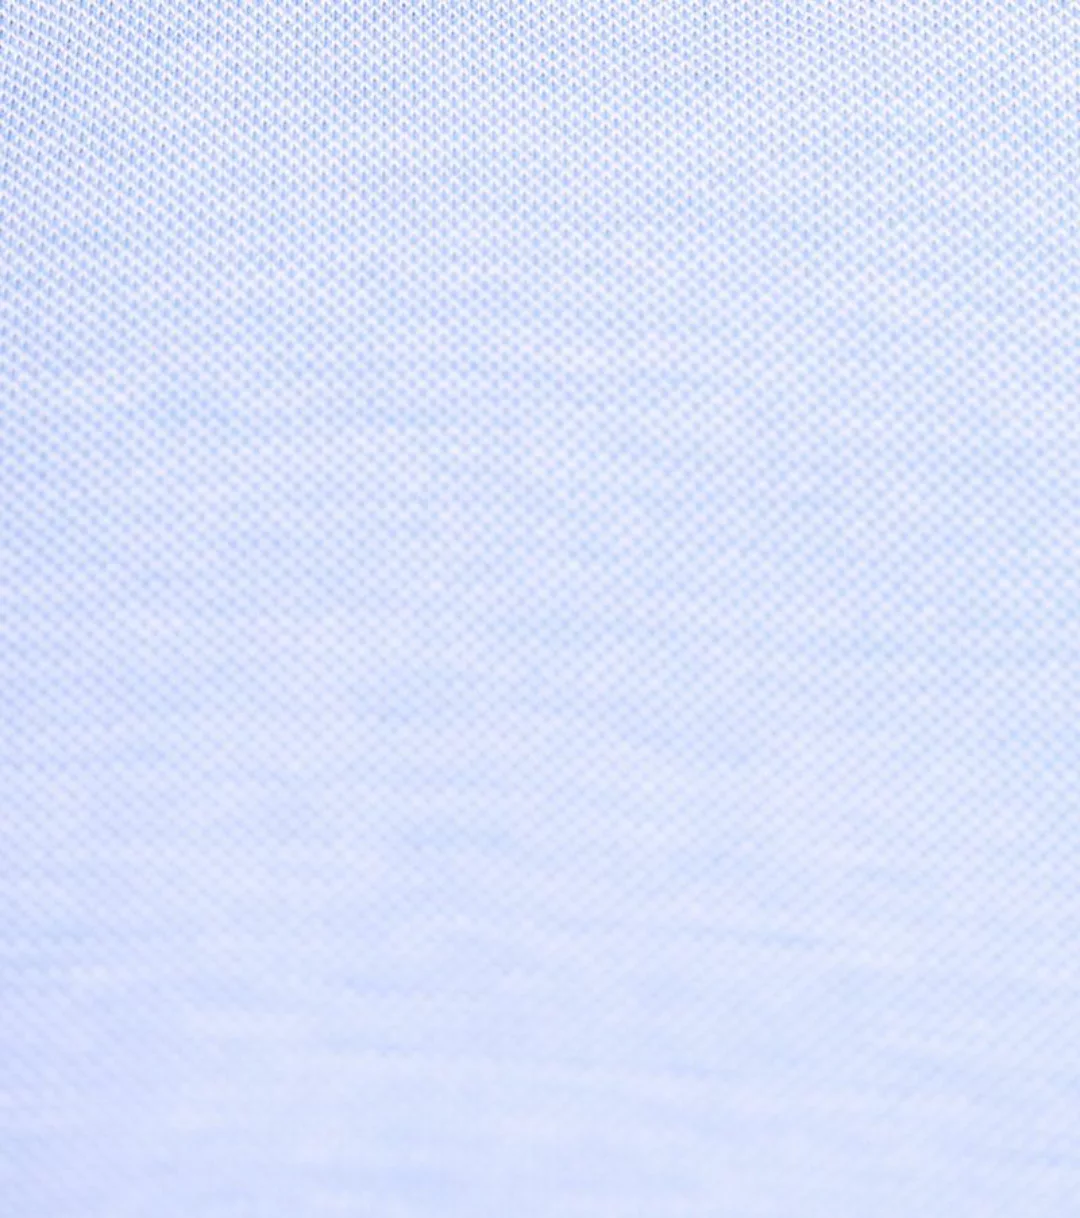 Suitable Hemd Knitted Piqué Hellblau - Größe 42 günstig online kaufen